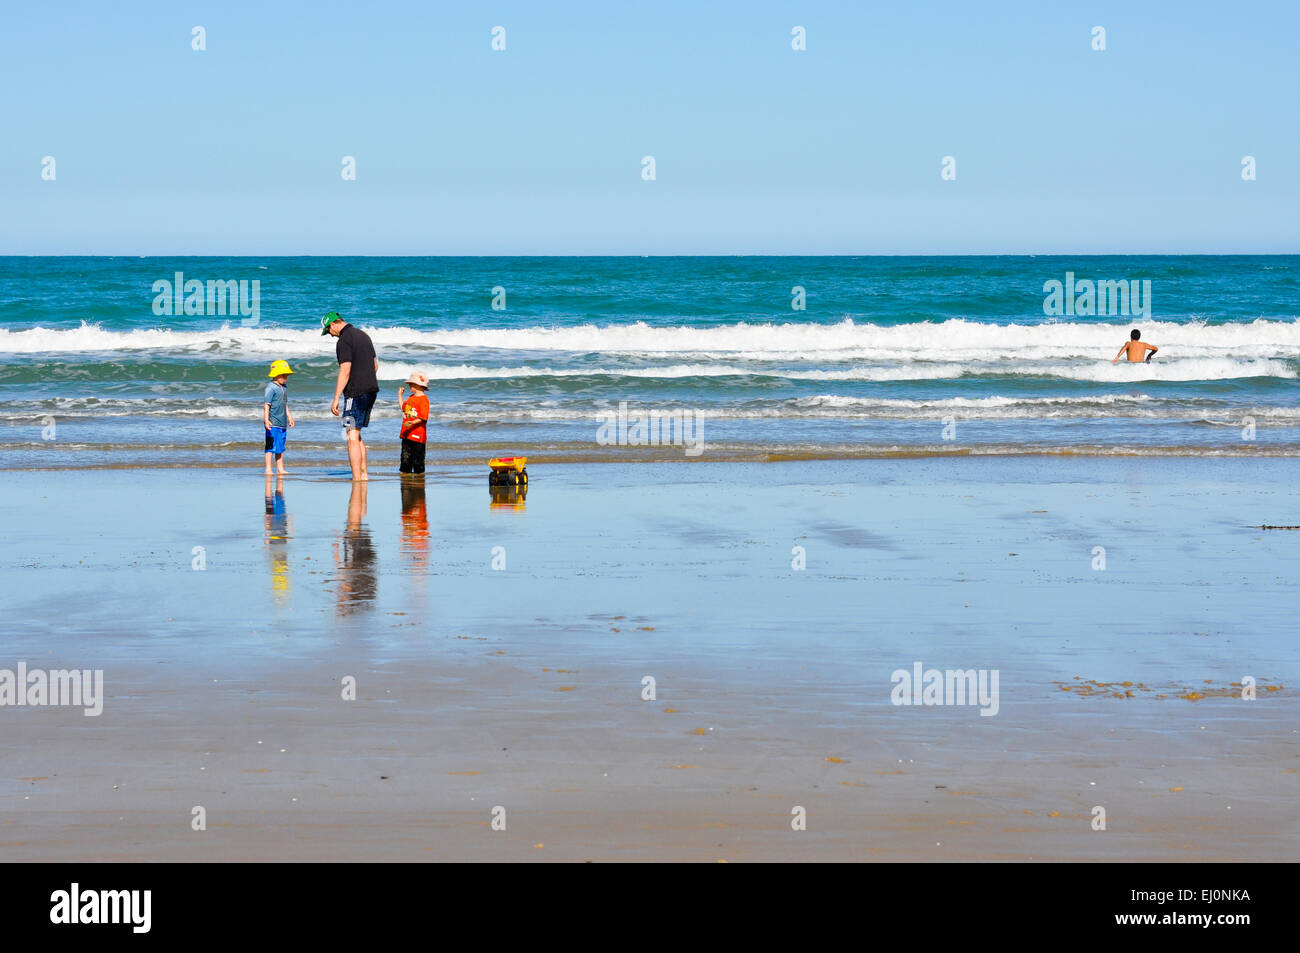 Familie spielen auf australischen Strand mit Schwimmer in der Brandung auf der rechten Seite des Bildes. Stockfoto